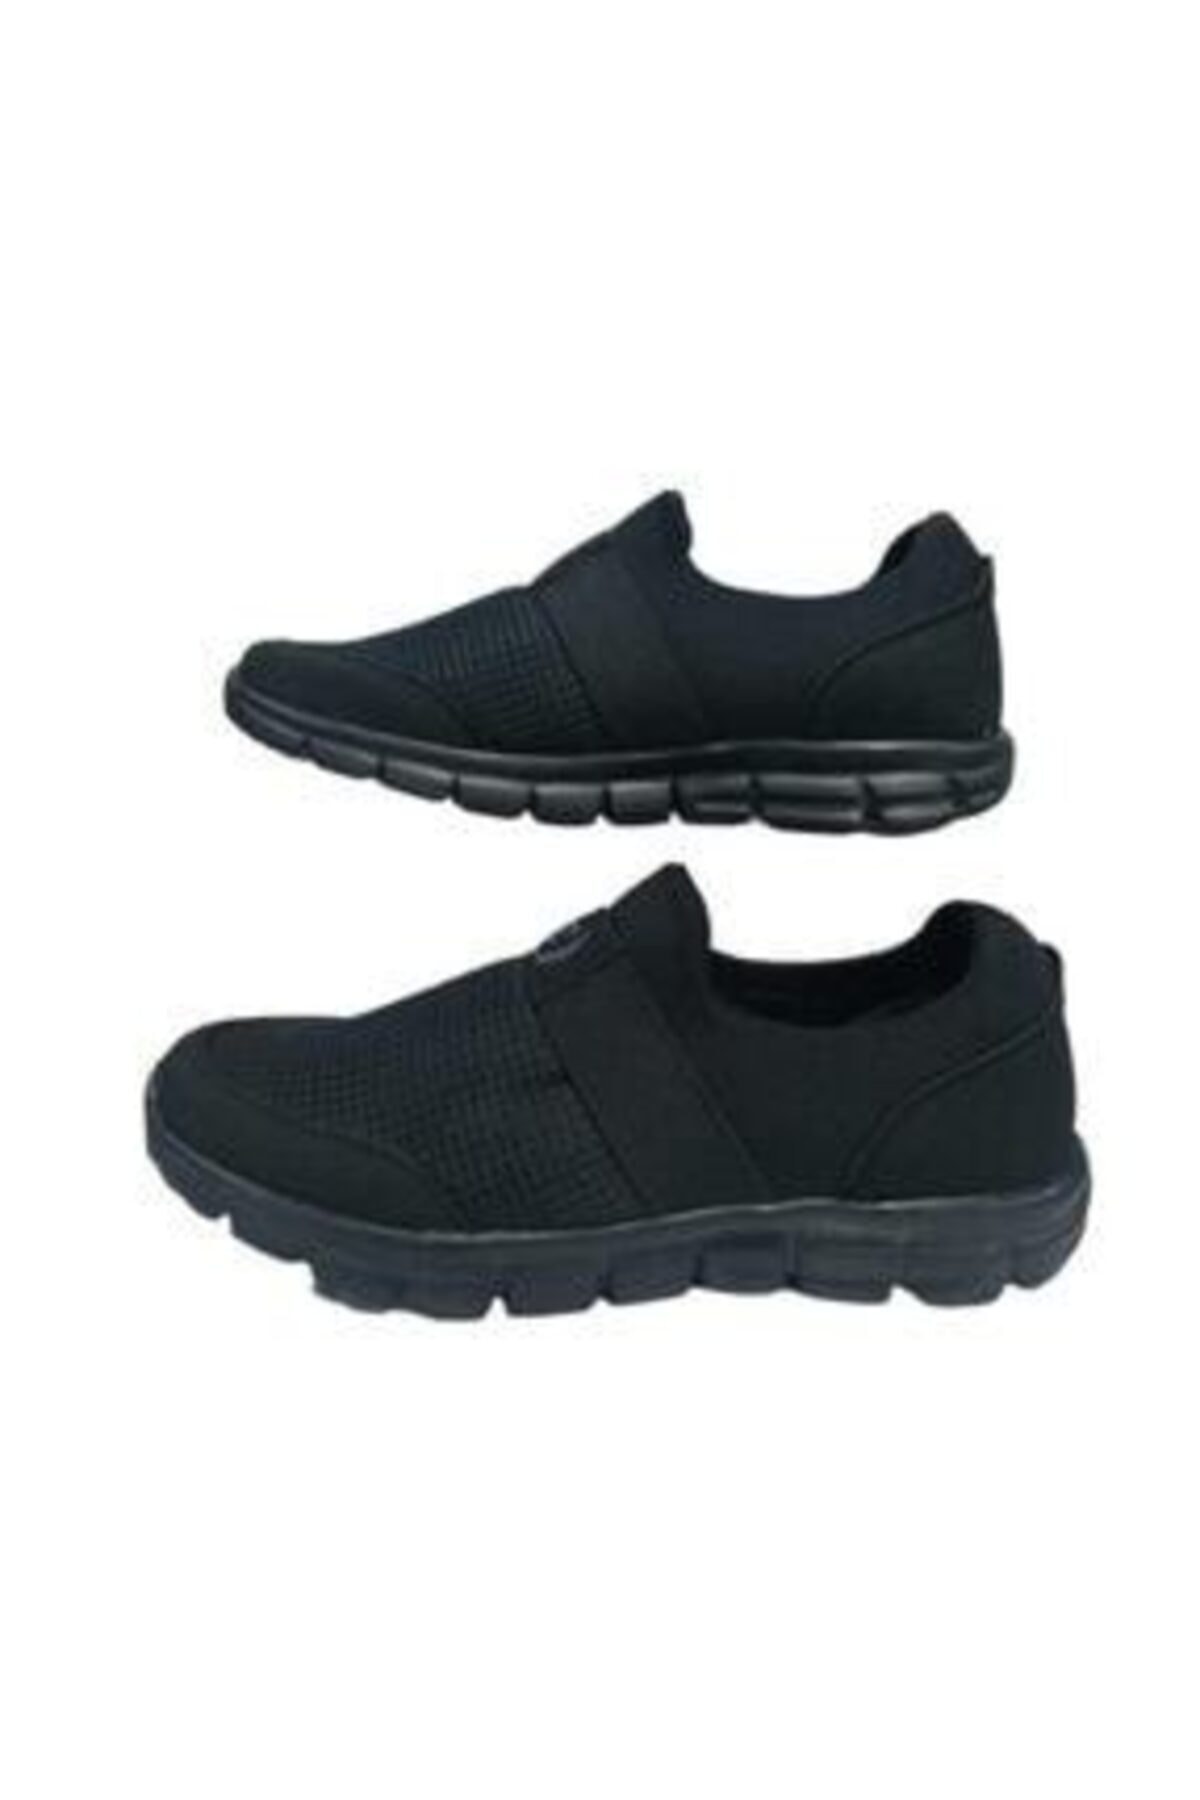 Ayakkabı Ülkesi Unisex Ortapedik Hafif Yürüyüş Günlük Spor Ayakkabı ZN10168